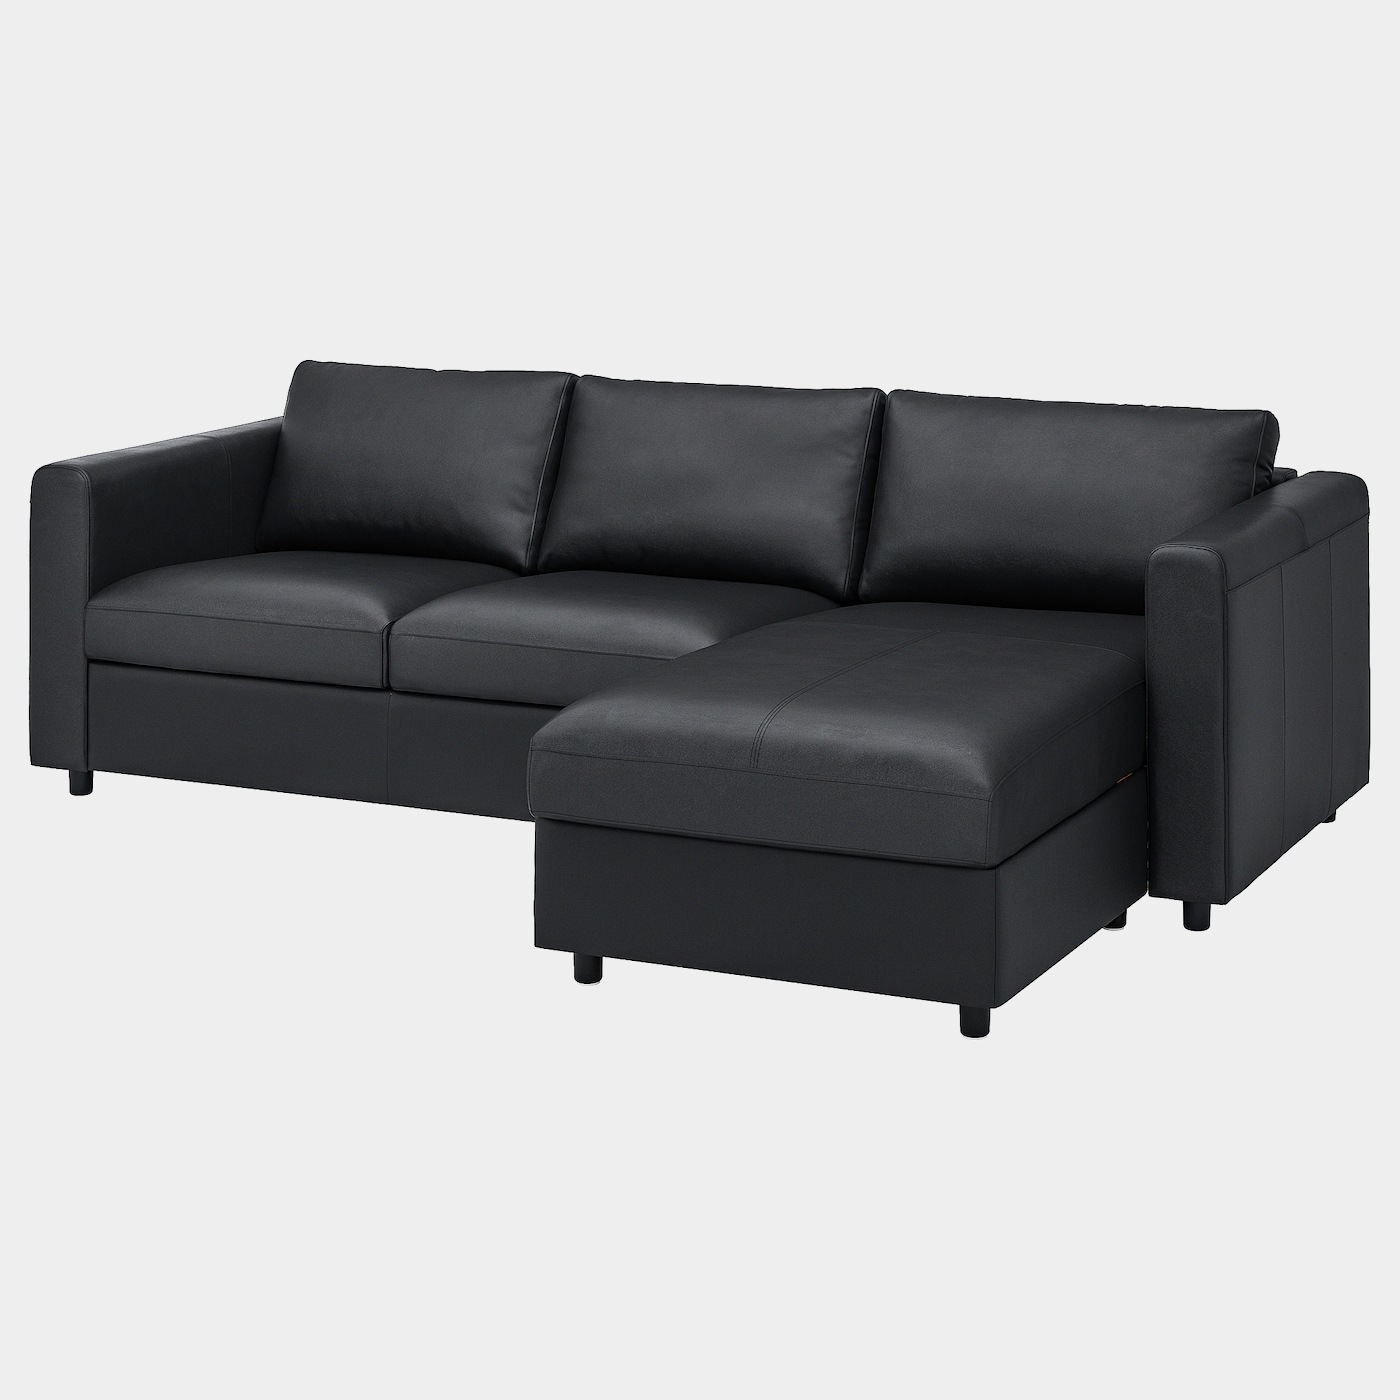 VIMLE 3er-Sofa  -  - Möbel Ideen für dein Zuhause von Home Trends. Möbel Trends von Social Media Influencer für dein Skandi Zuhause.